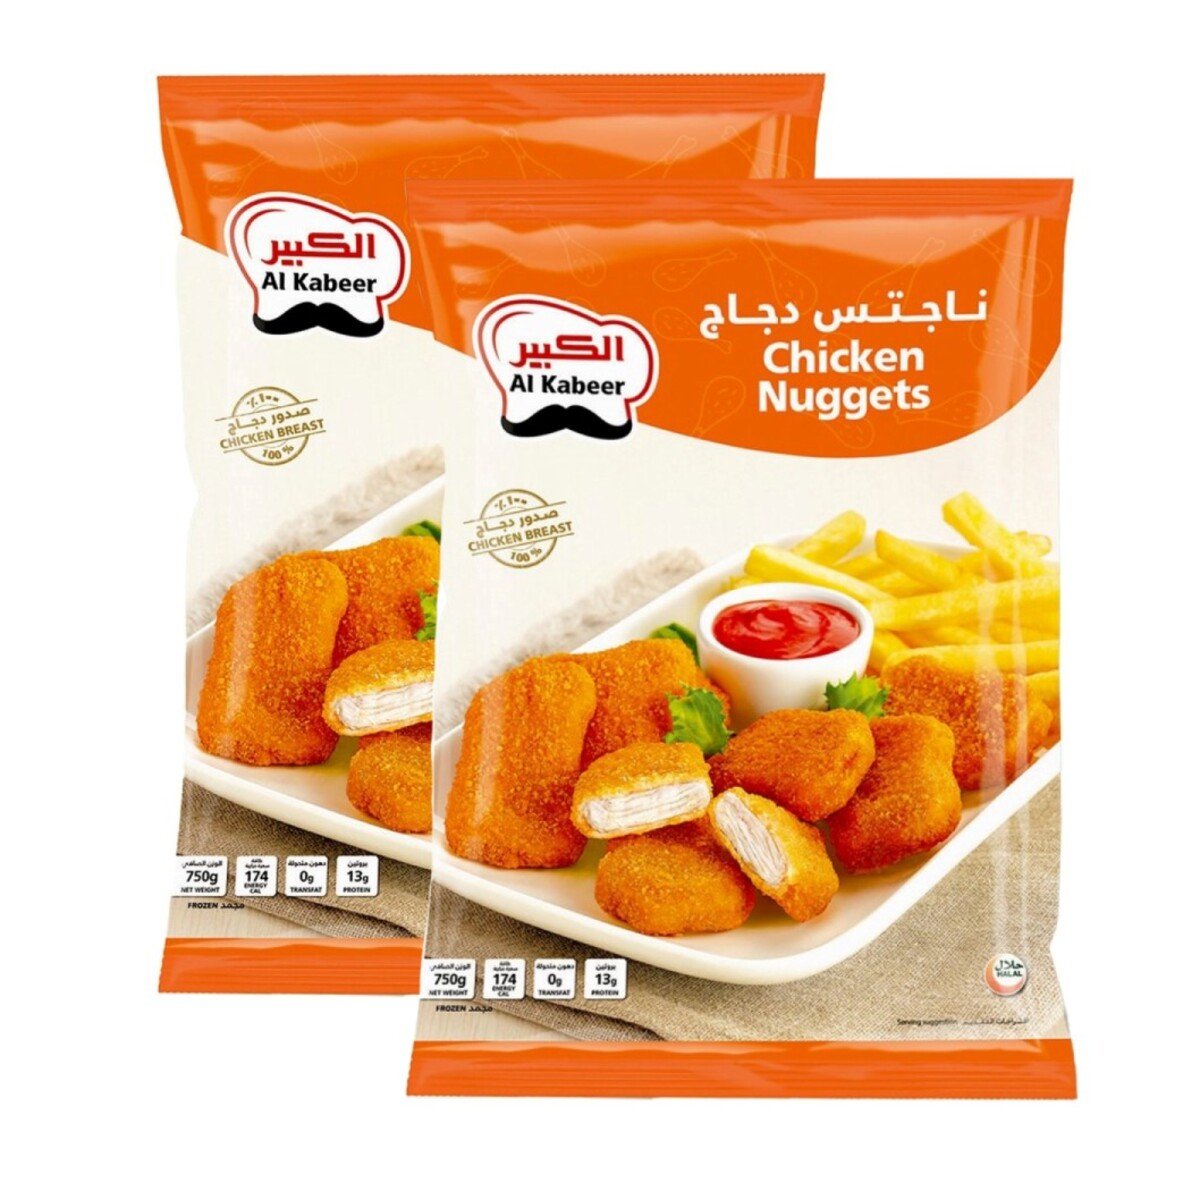 Buy Al Kabeer Chicken Nuggets Value Pack 2 x 750 g Online at Best Price | Nuggets | Lulu UAE in UAE